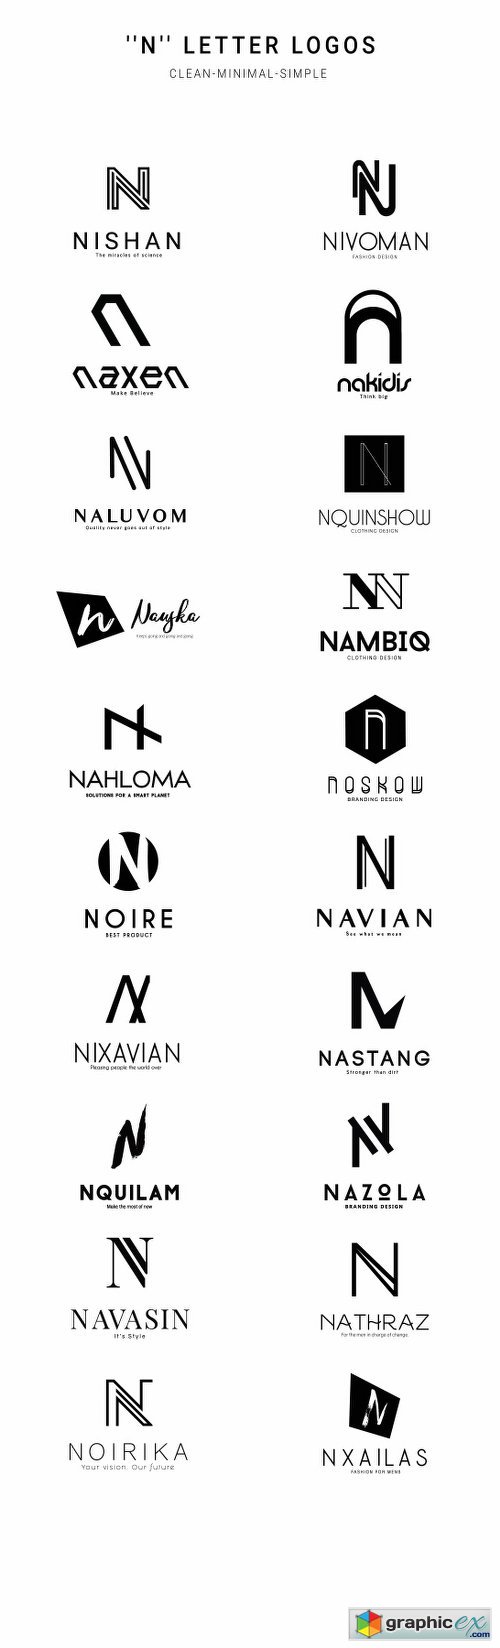 20 "N" Letter Alphabetic Logos